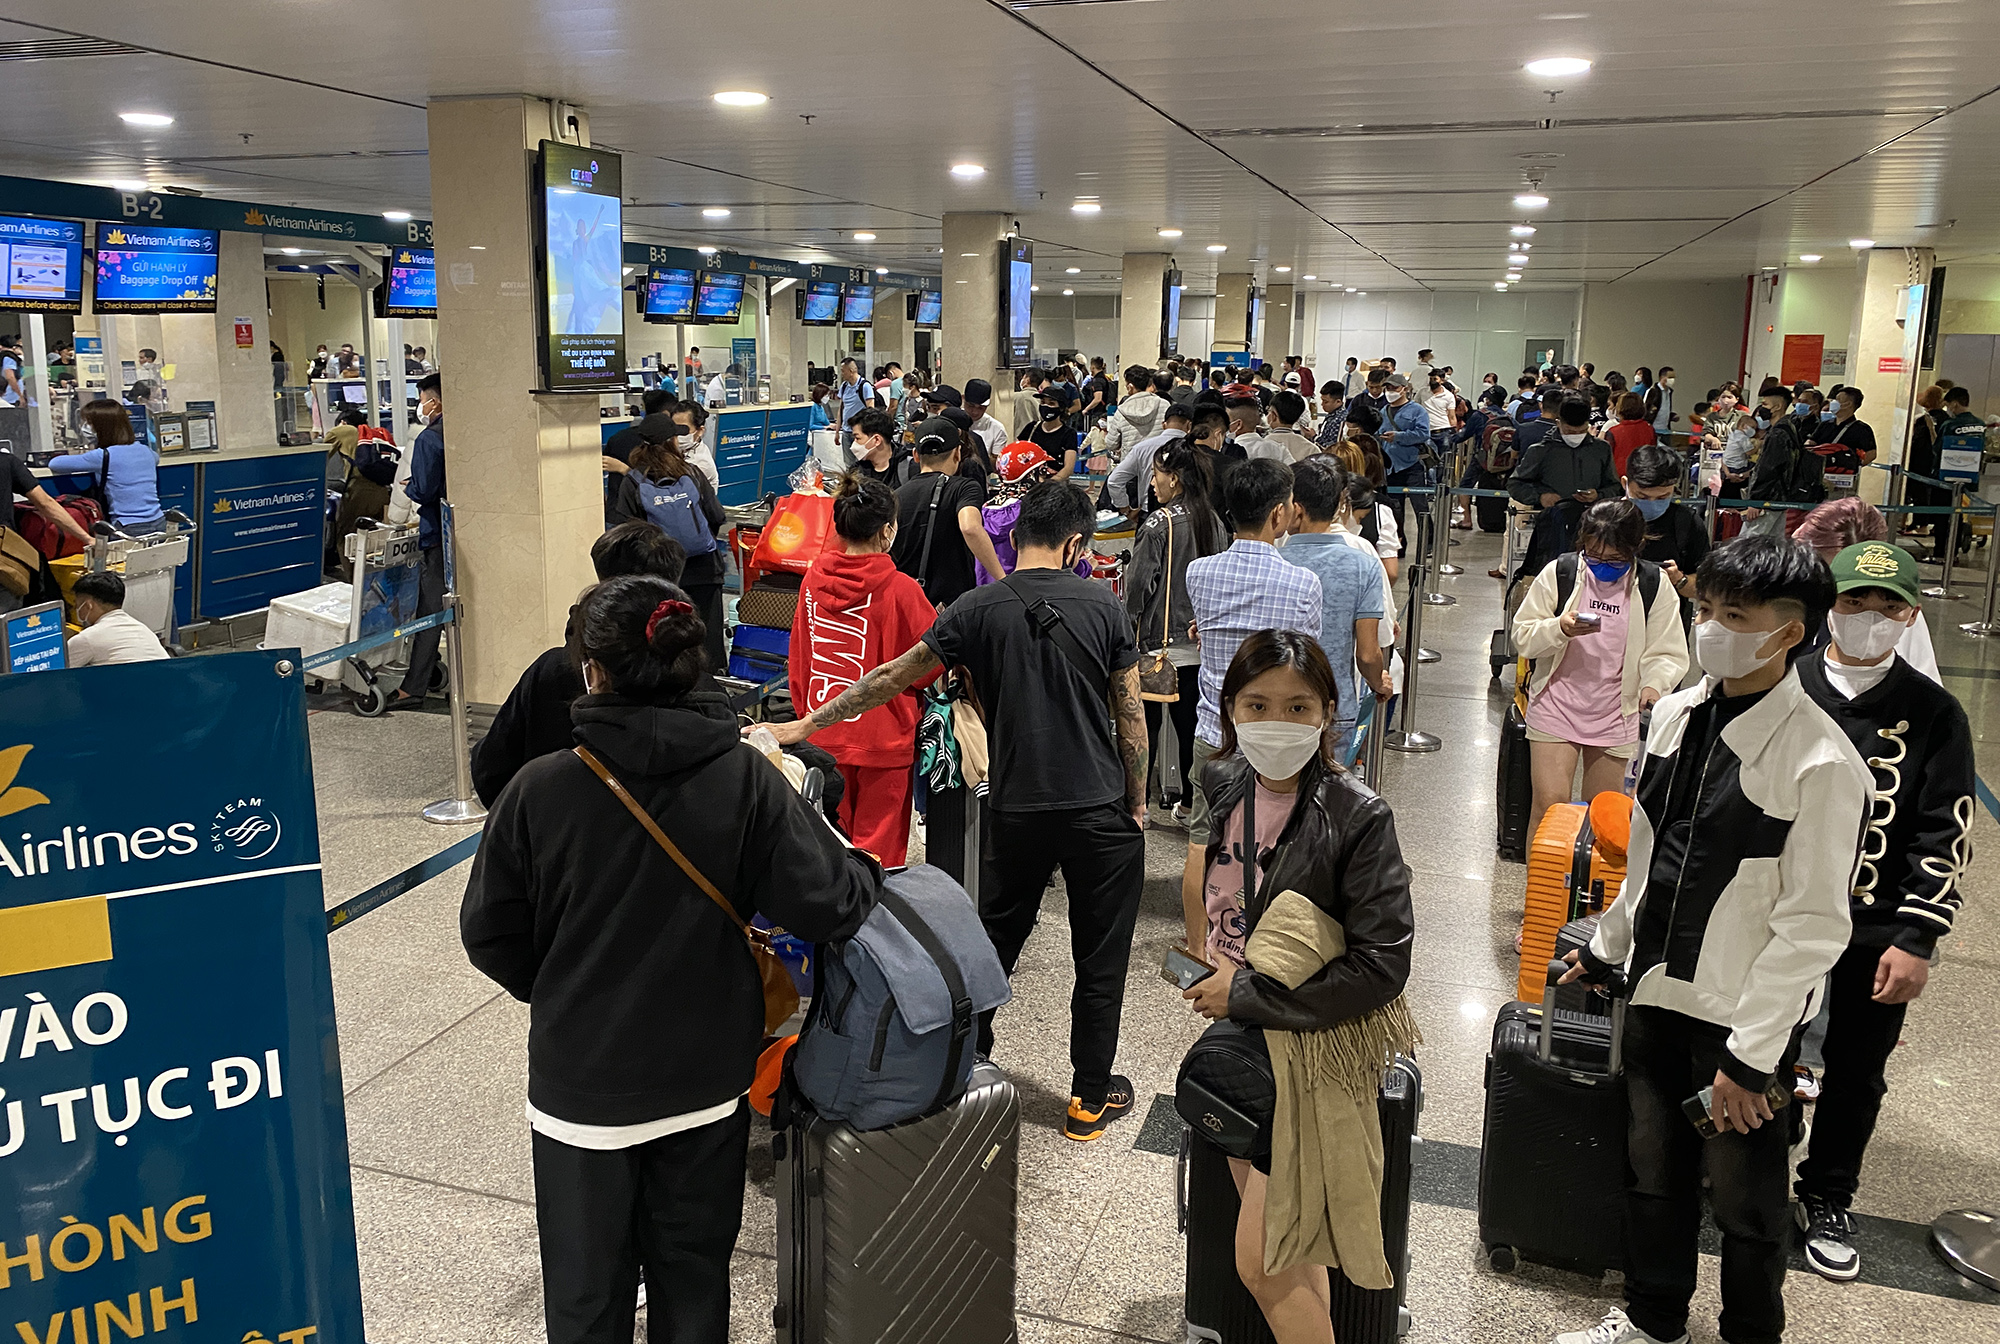 Đêm 16/1, rạng sáng 17/1 (26 tháng Chạp), sân bay Tân Sơn Nhất đông nghẹt người đến làm thủ tục, chờ lên máy bay. Từ sảnh ga quốc nội đến các khu vực quầy check in đều làm việc hết công suất nhưng hành khách vẫn phải xếp hàng khá dài đợi đến lượt.